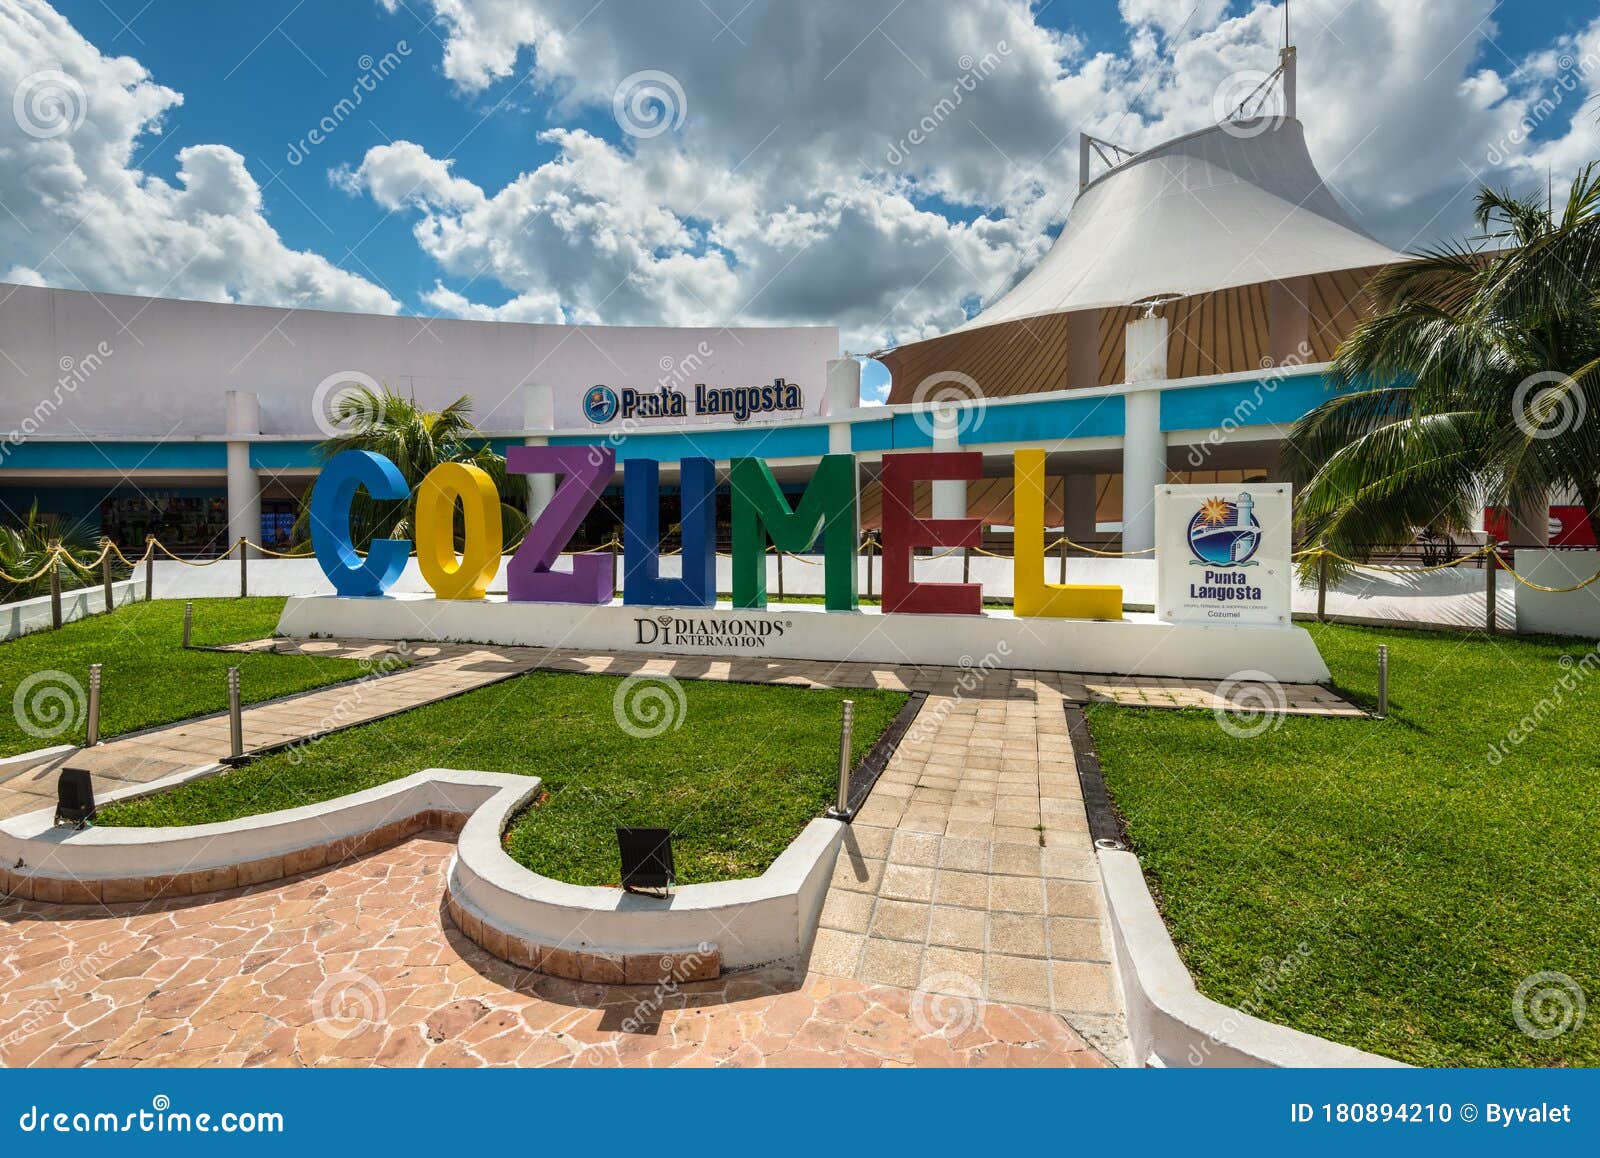 Introducir 69+ imagen cozumel shopping center - Abzlocal.mx